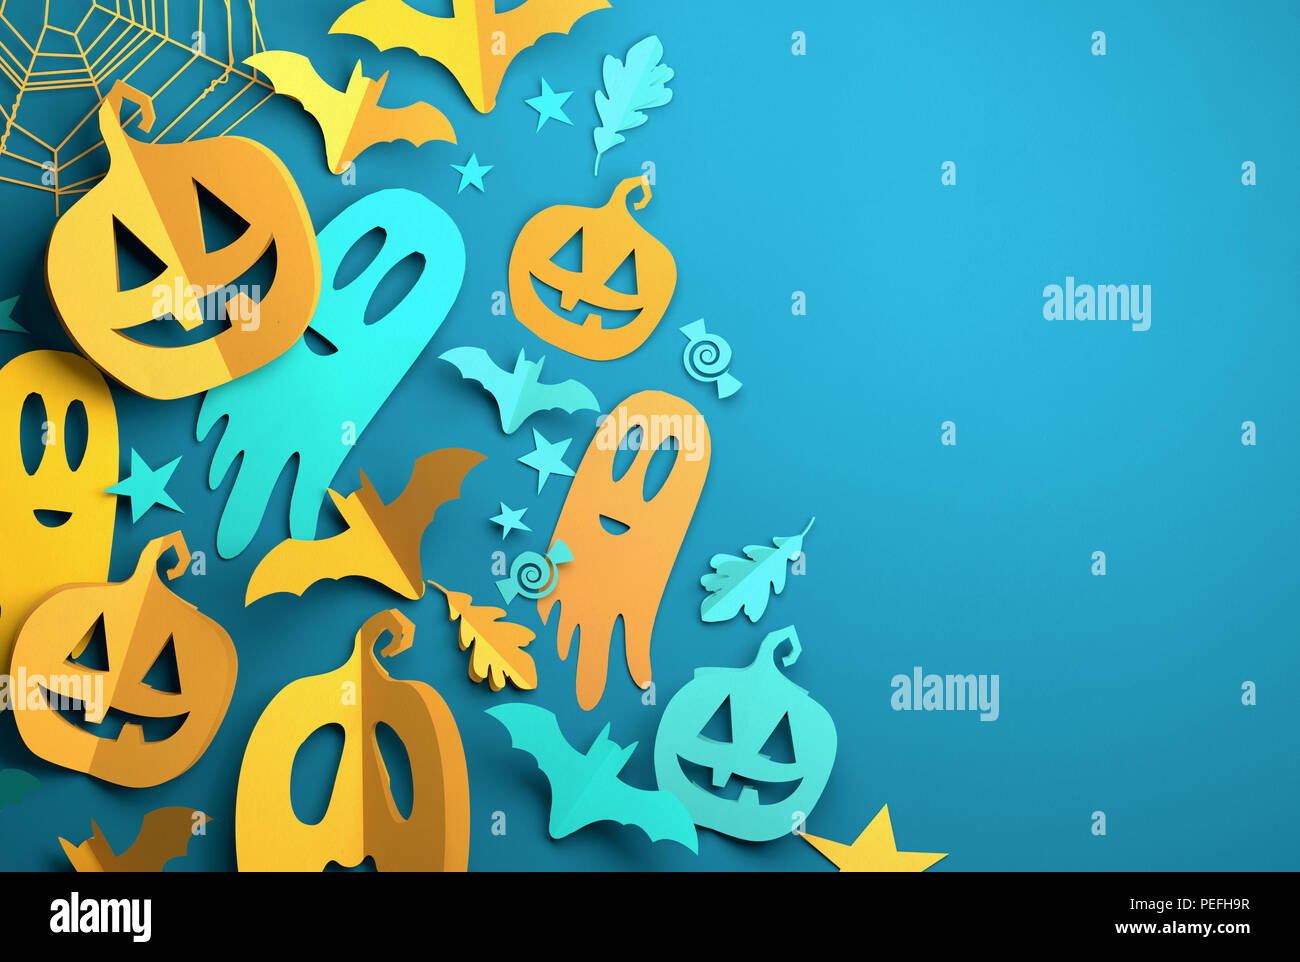 Papier plié origami. Halloween avec fond bleu découper des citrouilles, des chauves-souris, fantômes de papier et d'autres décorations avec place pour le texte. Illustratio 3D Banque D'Images